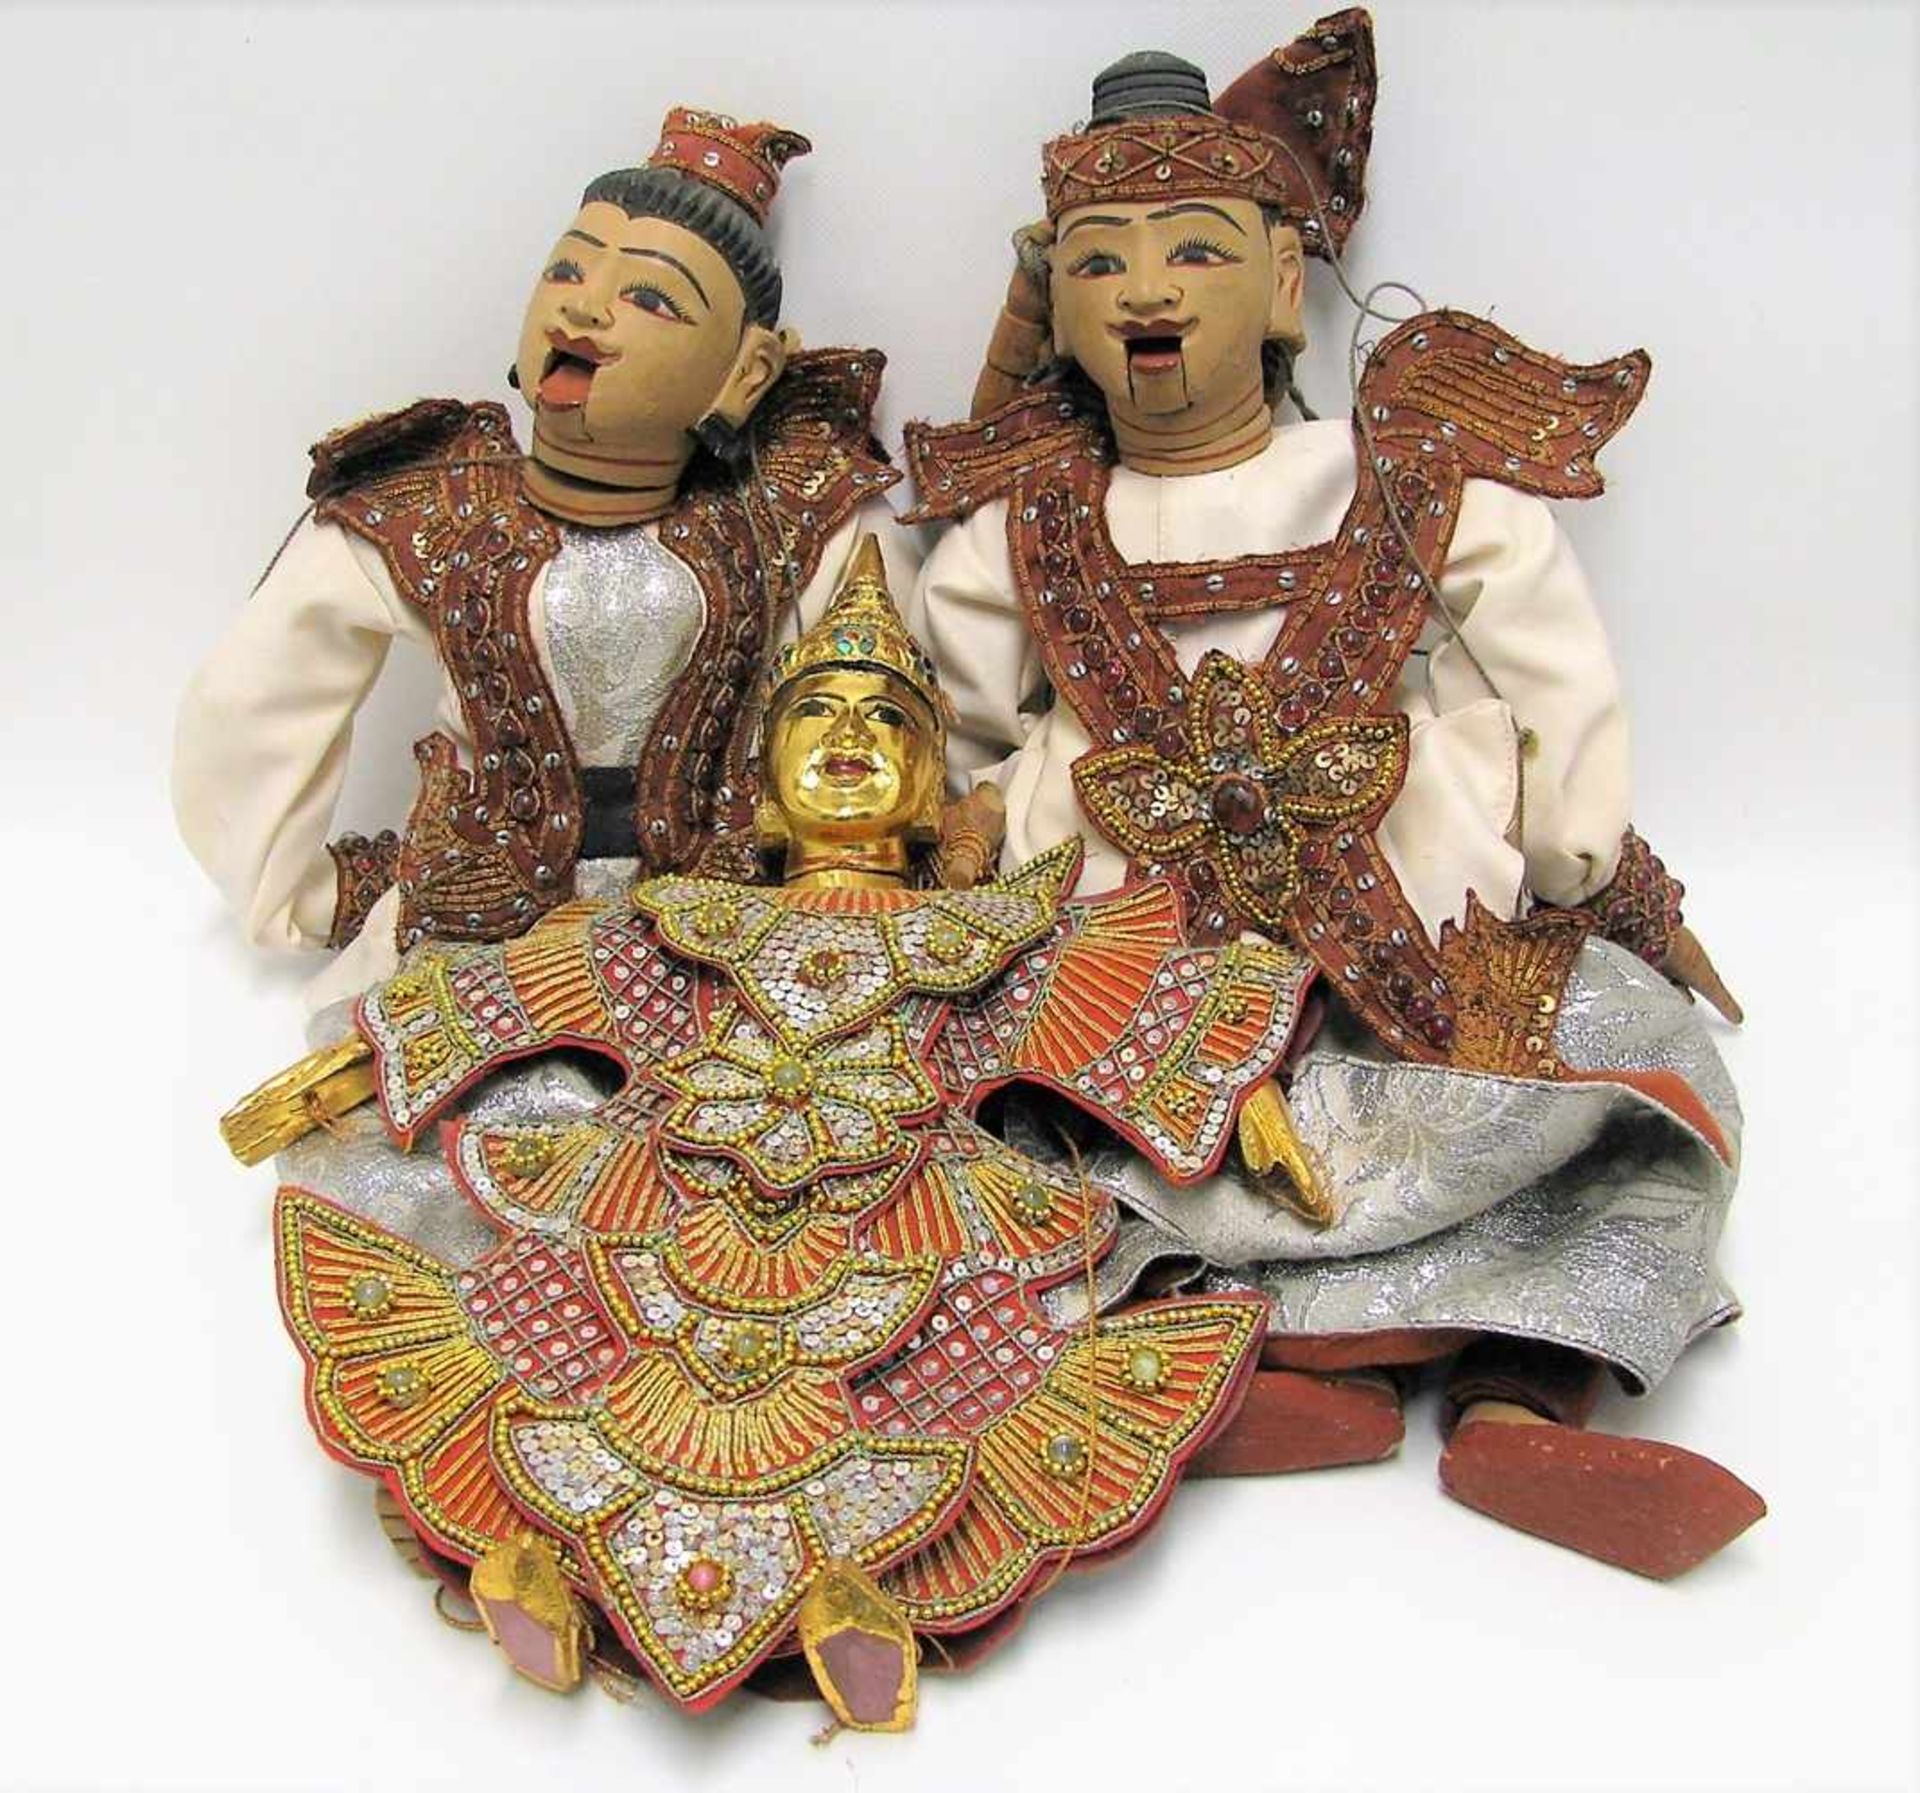 3 Marionettenfiguren, Indonesien, Holz beschnitzt, ca. l 55 cm.- - -19.00 % buyer's premium on the